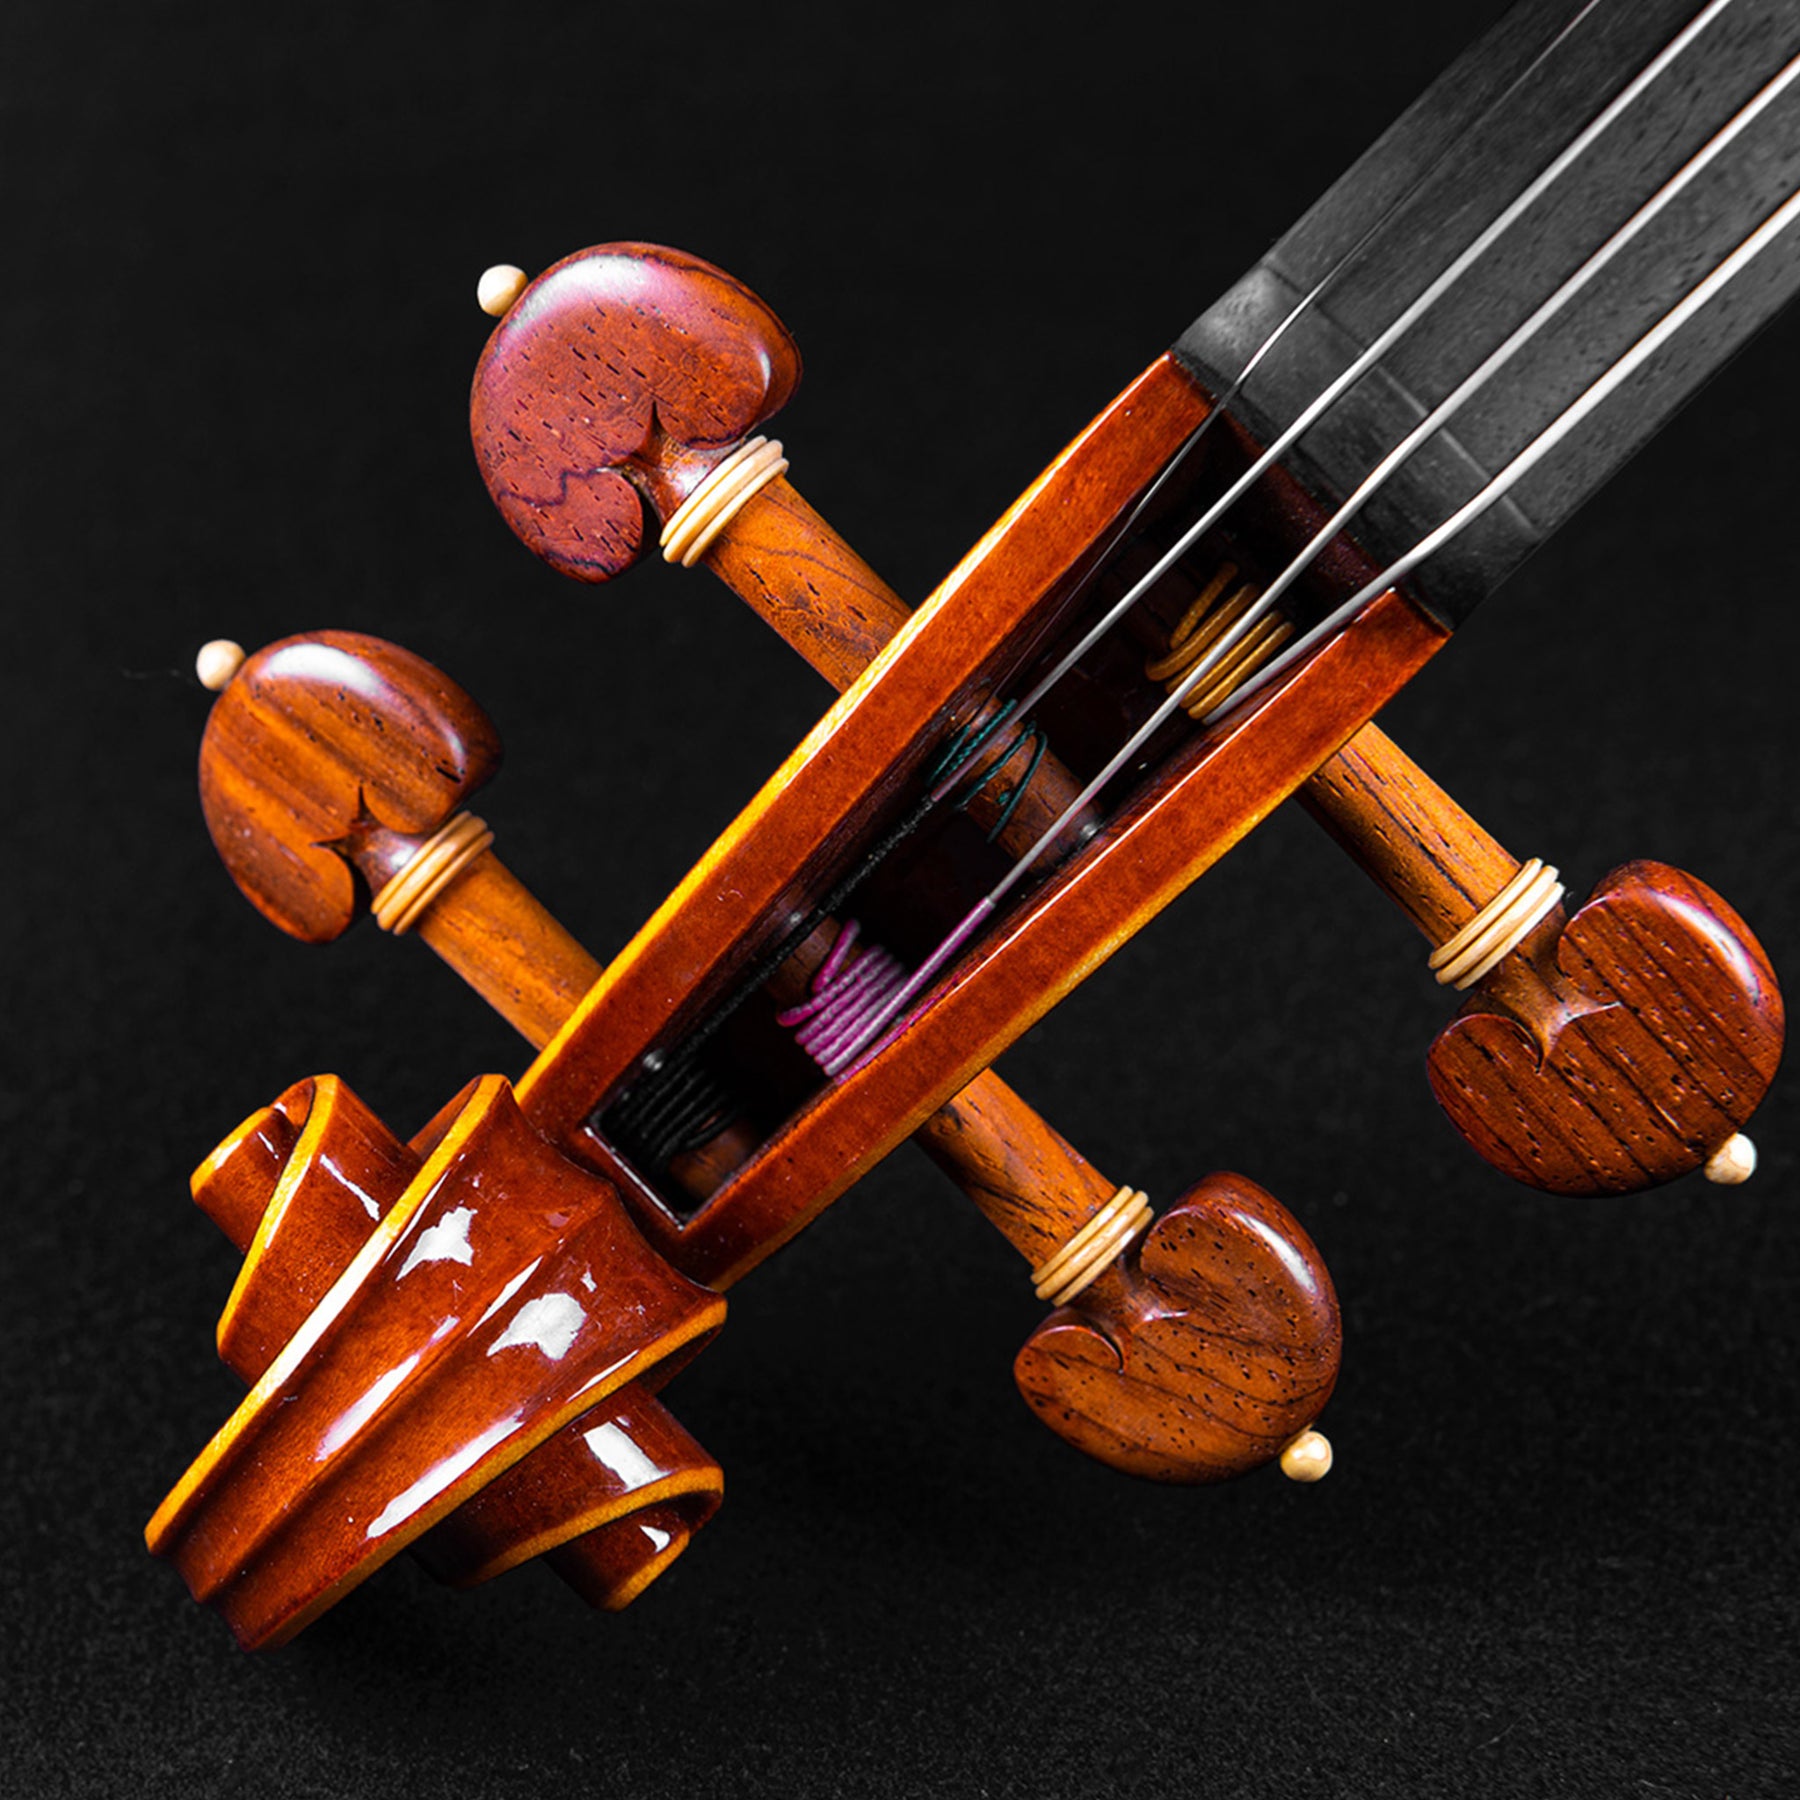 Marco Cargnelutti "Il Toscano" 2021 Violin